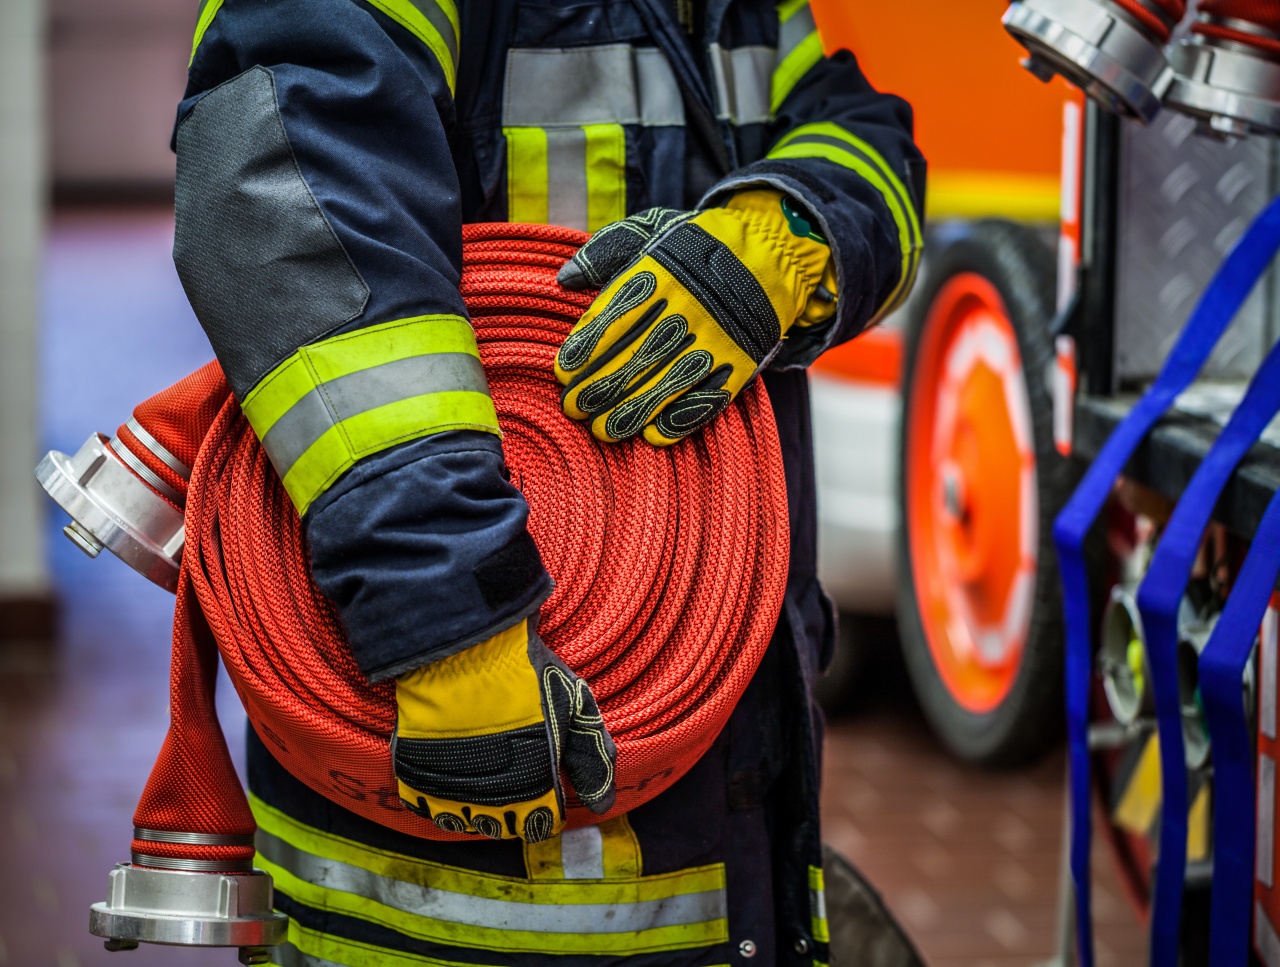 Papírhulladék égett Nyíregyházán – A tűzoltók segítségére is szükség volt az oltáshoz